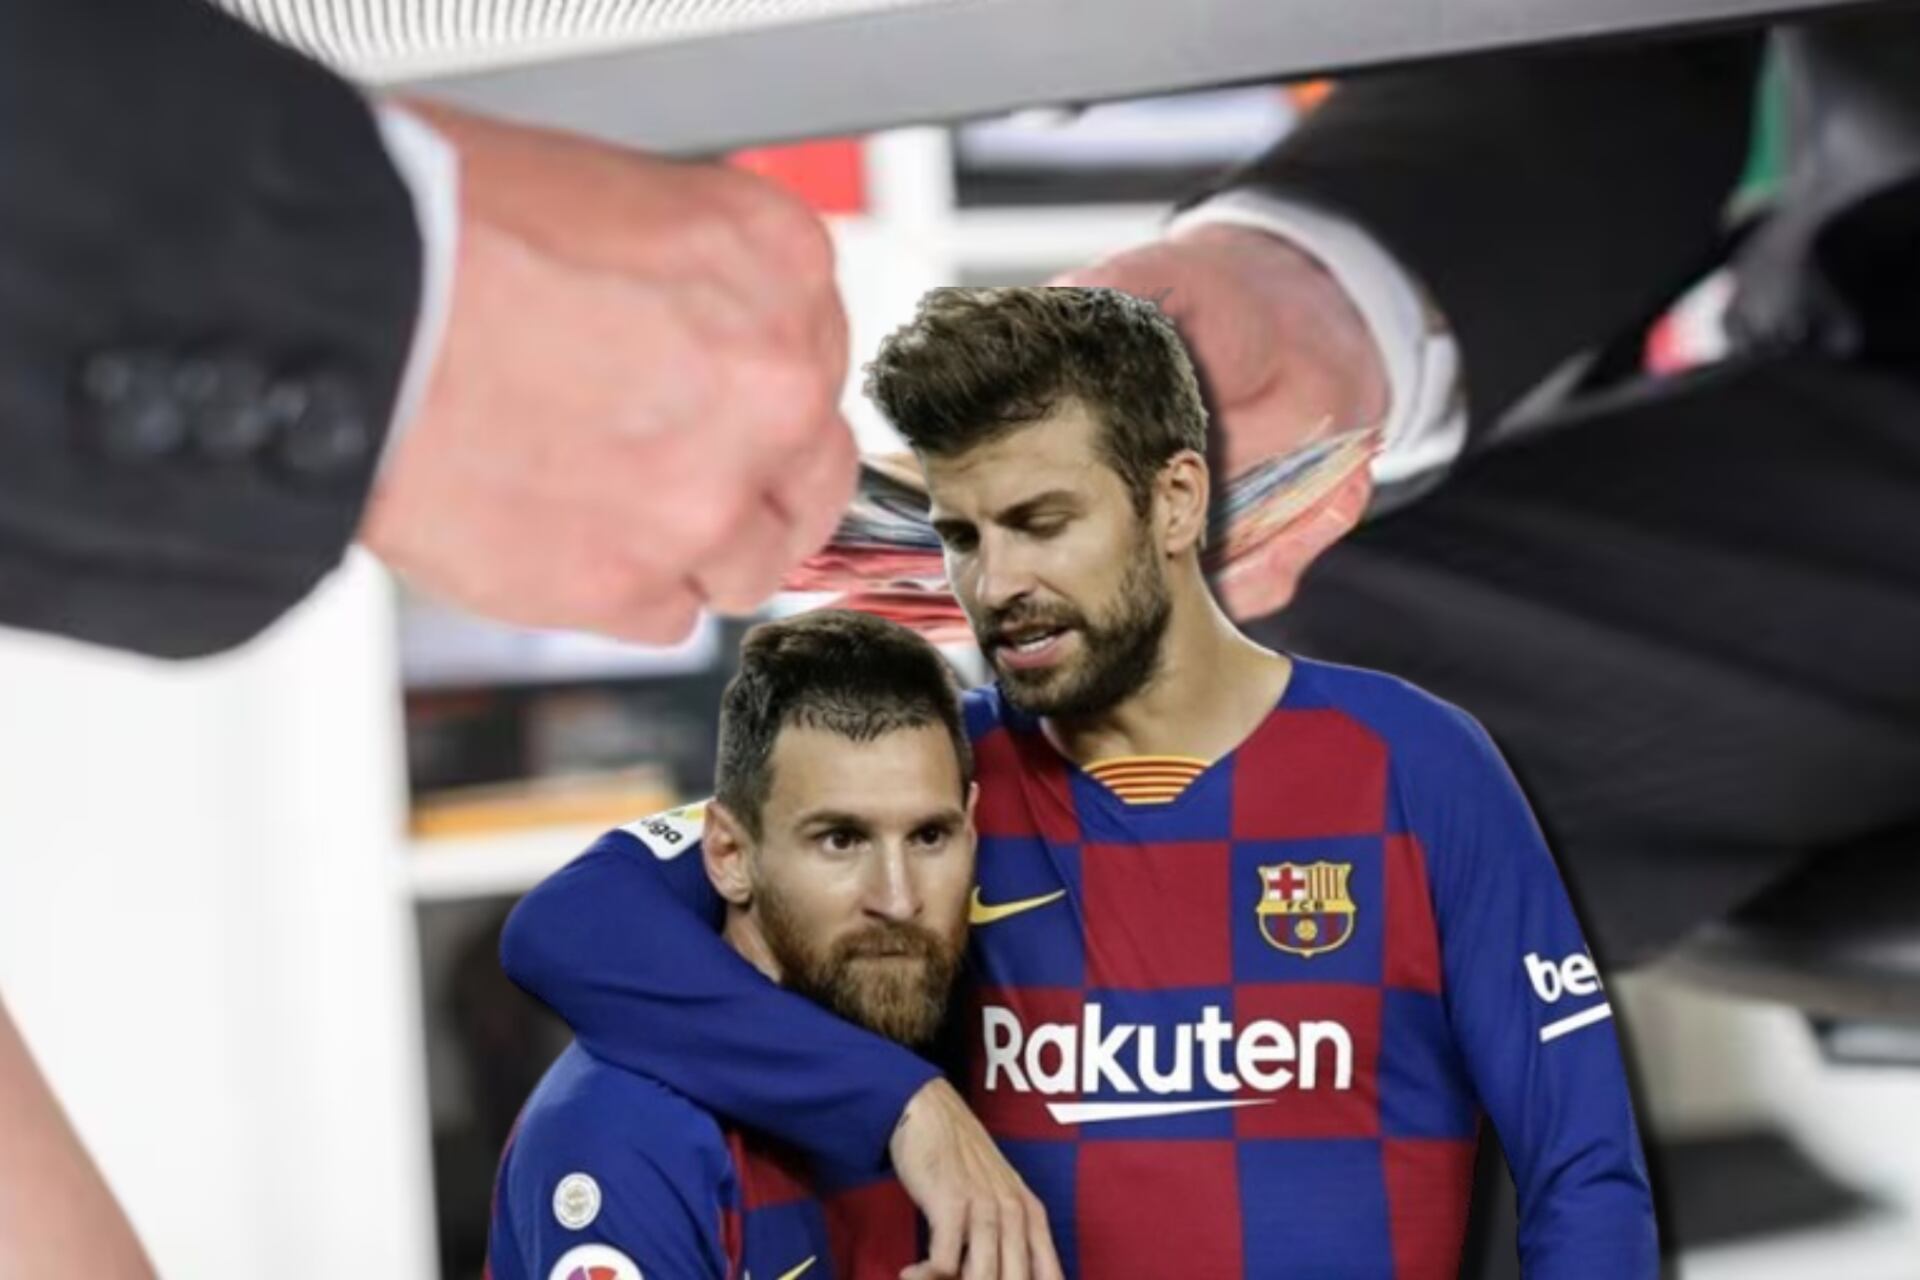 Si comprueban que Messi y Piqué desviaron fondos, tendrían esta fuerte condena